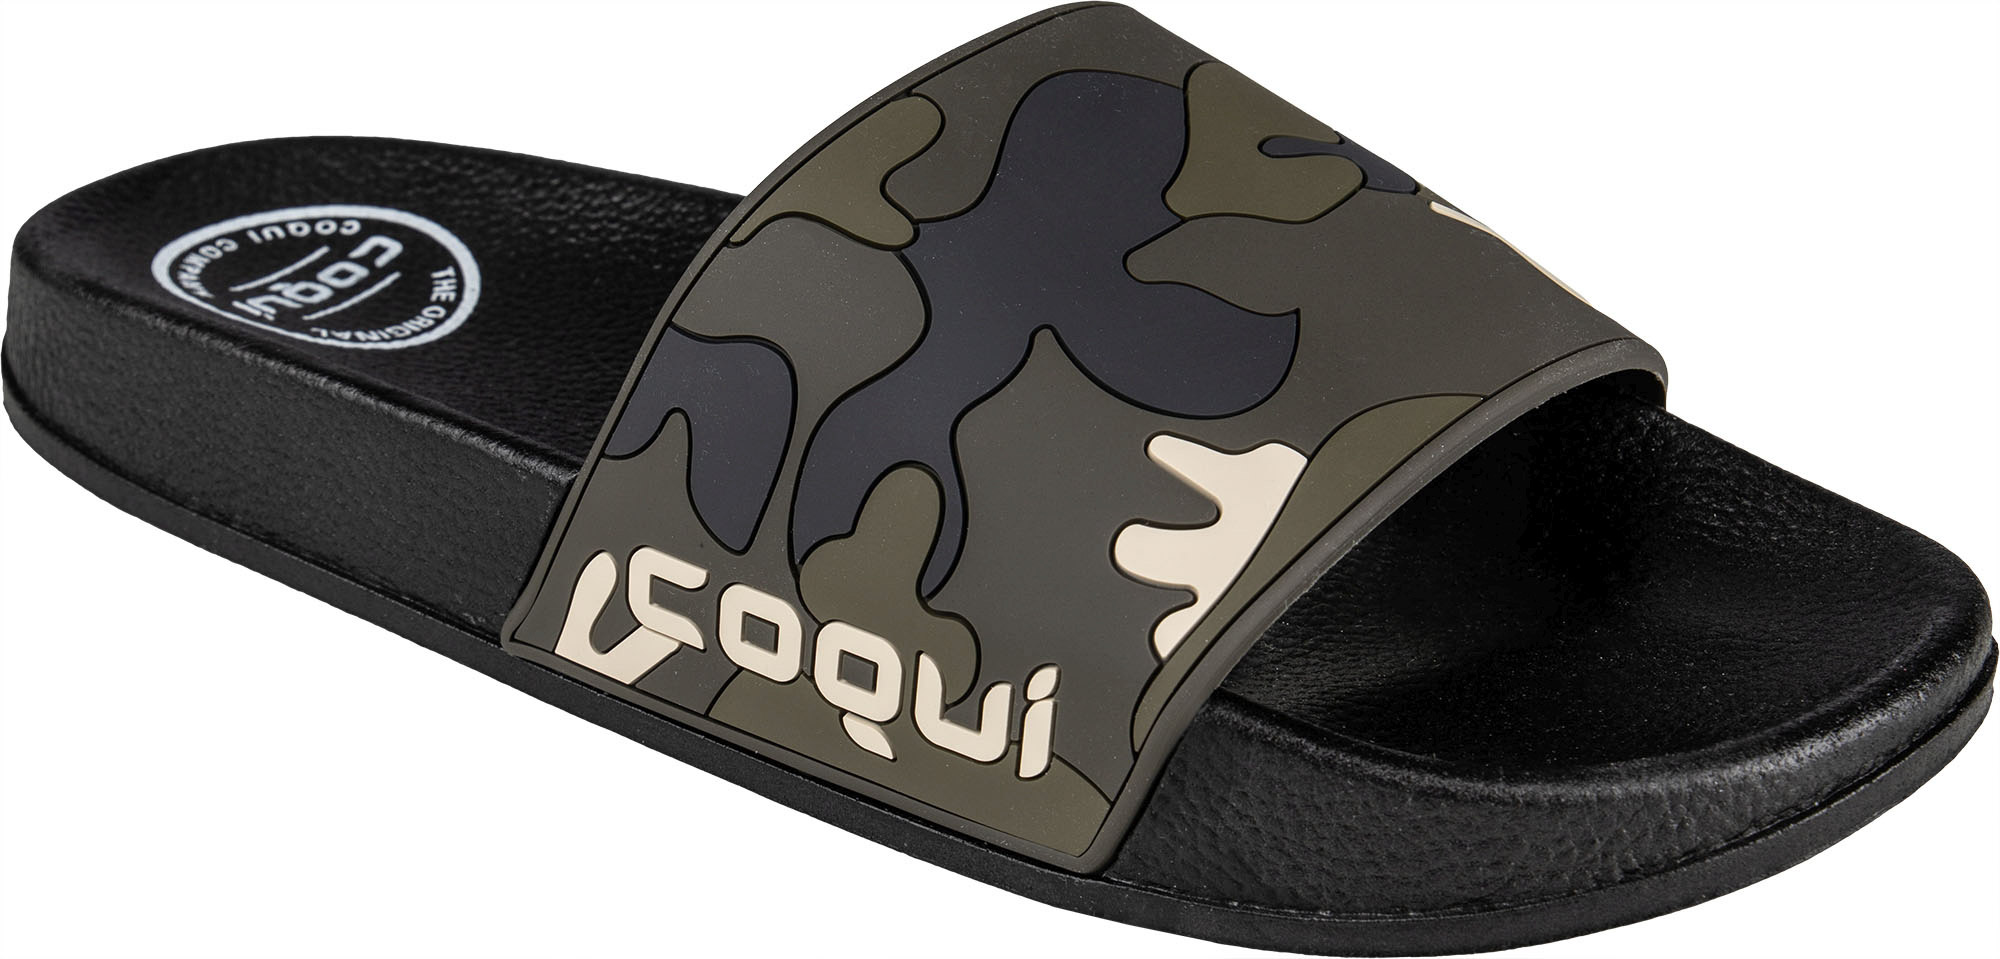 Pánské pantofle Coqui Flexi 6261 Black-Army green camo|45